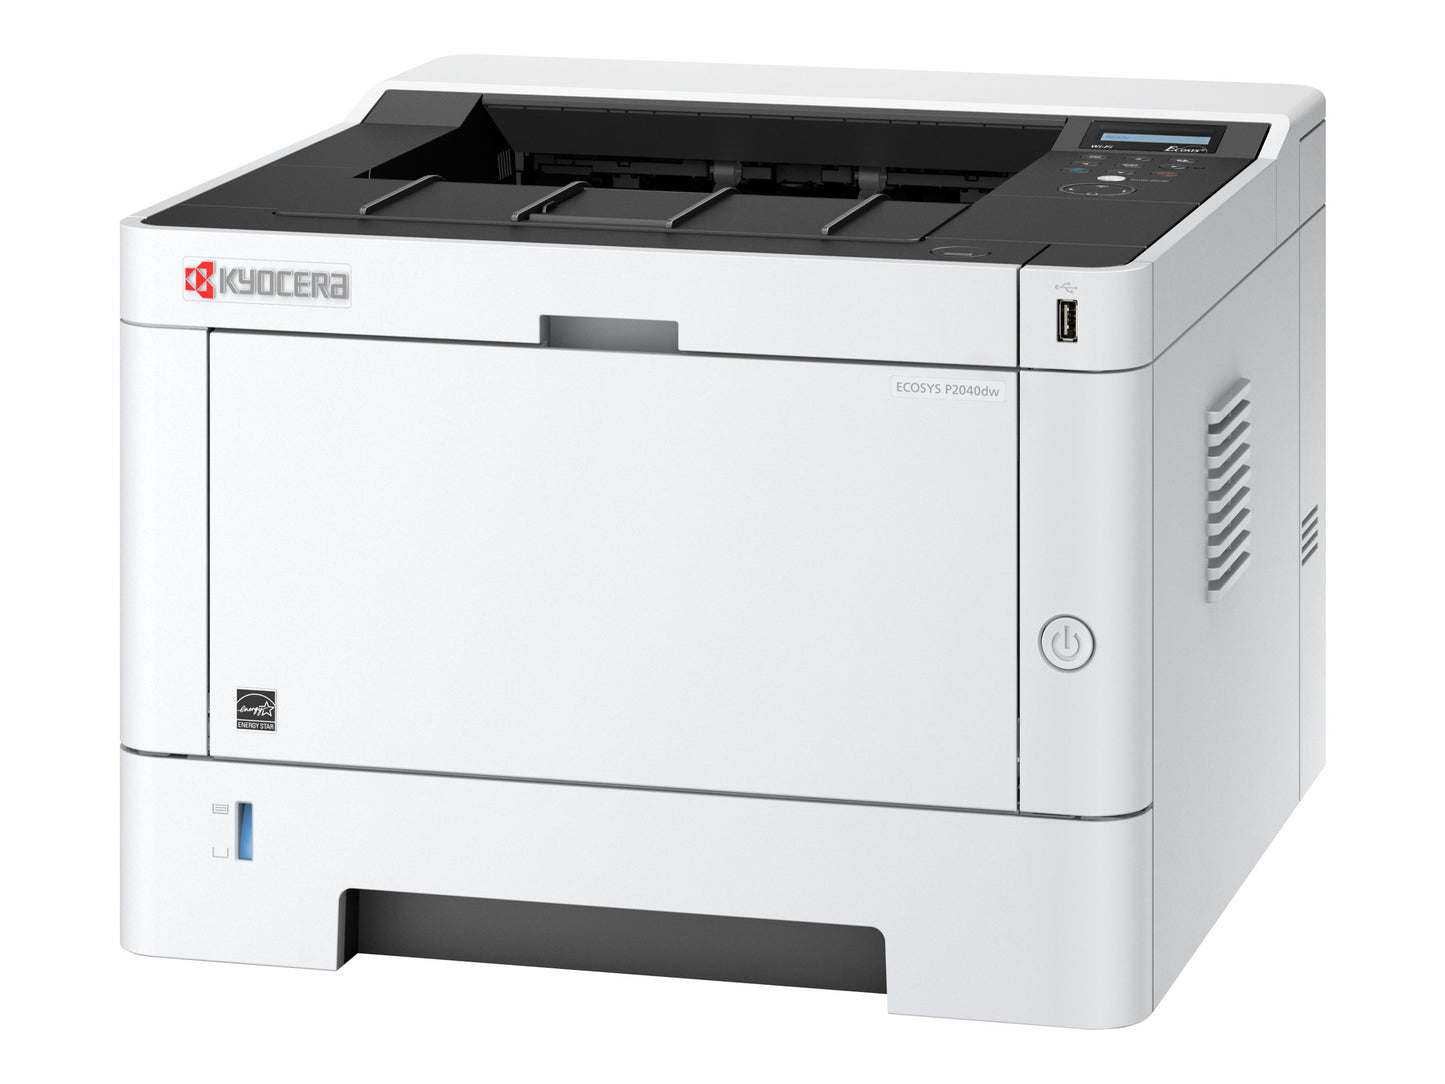 ECOSYS P2040dw Mono Laser Printer